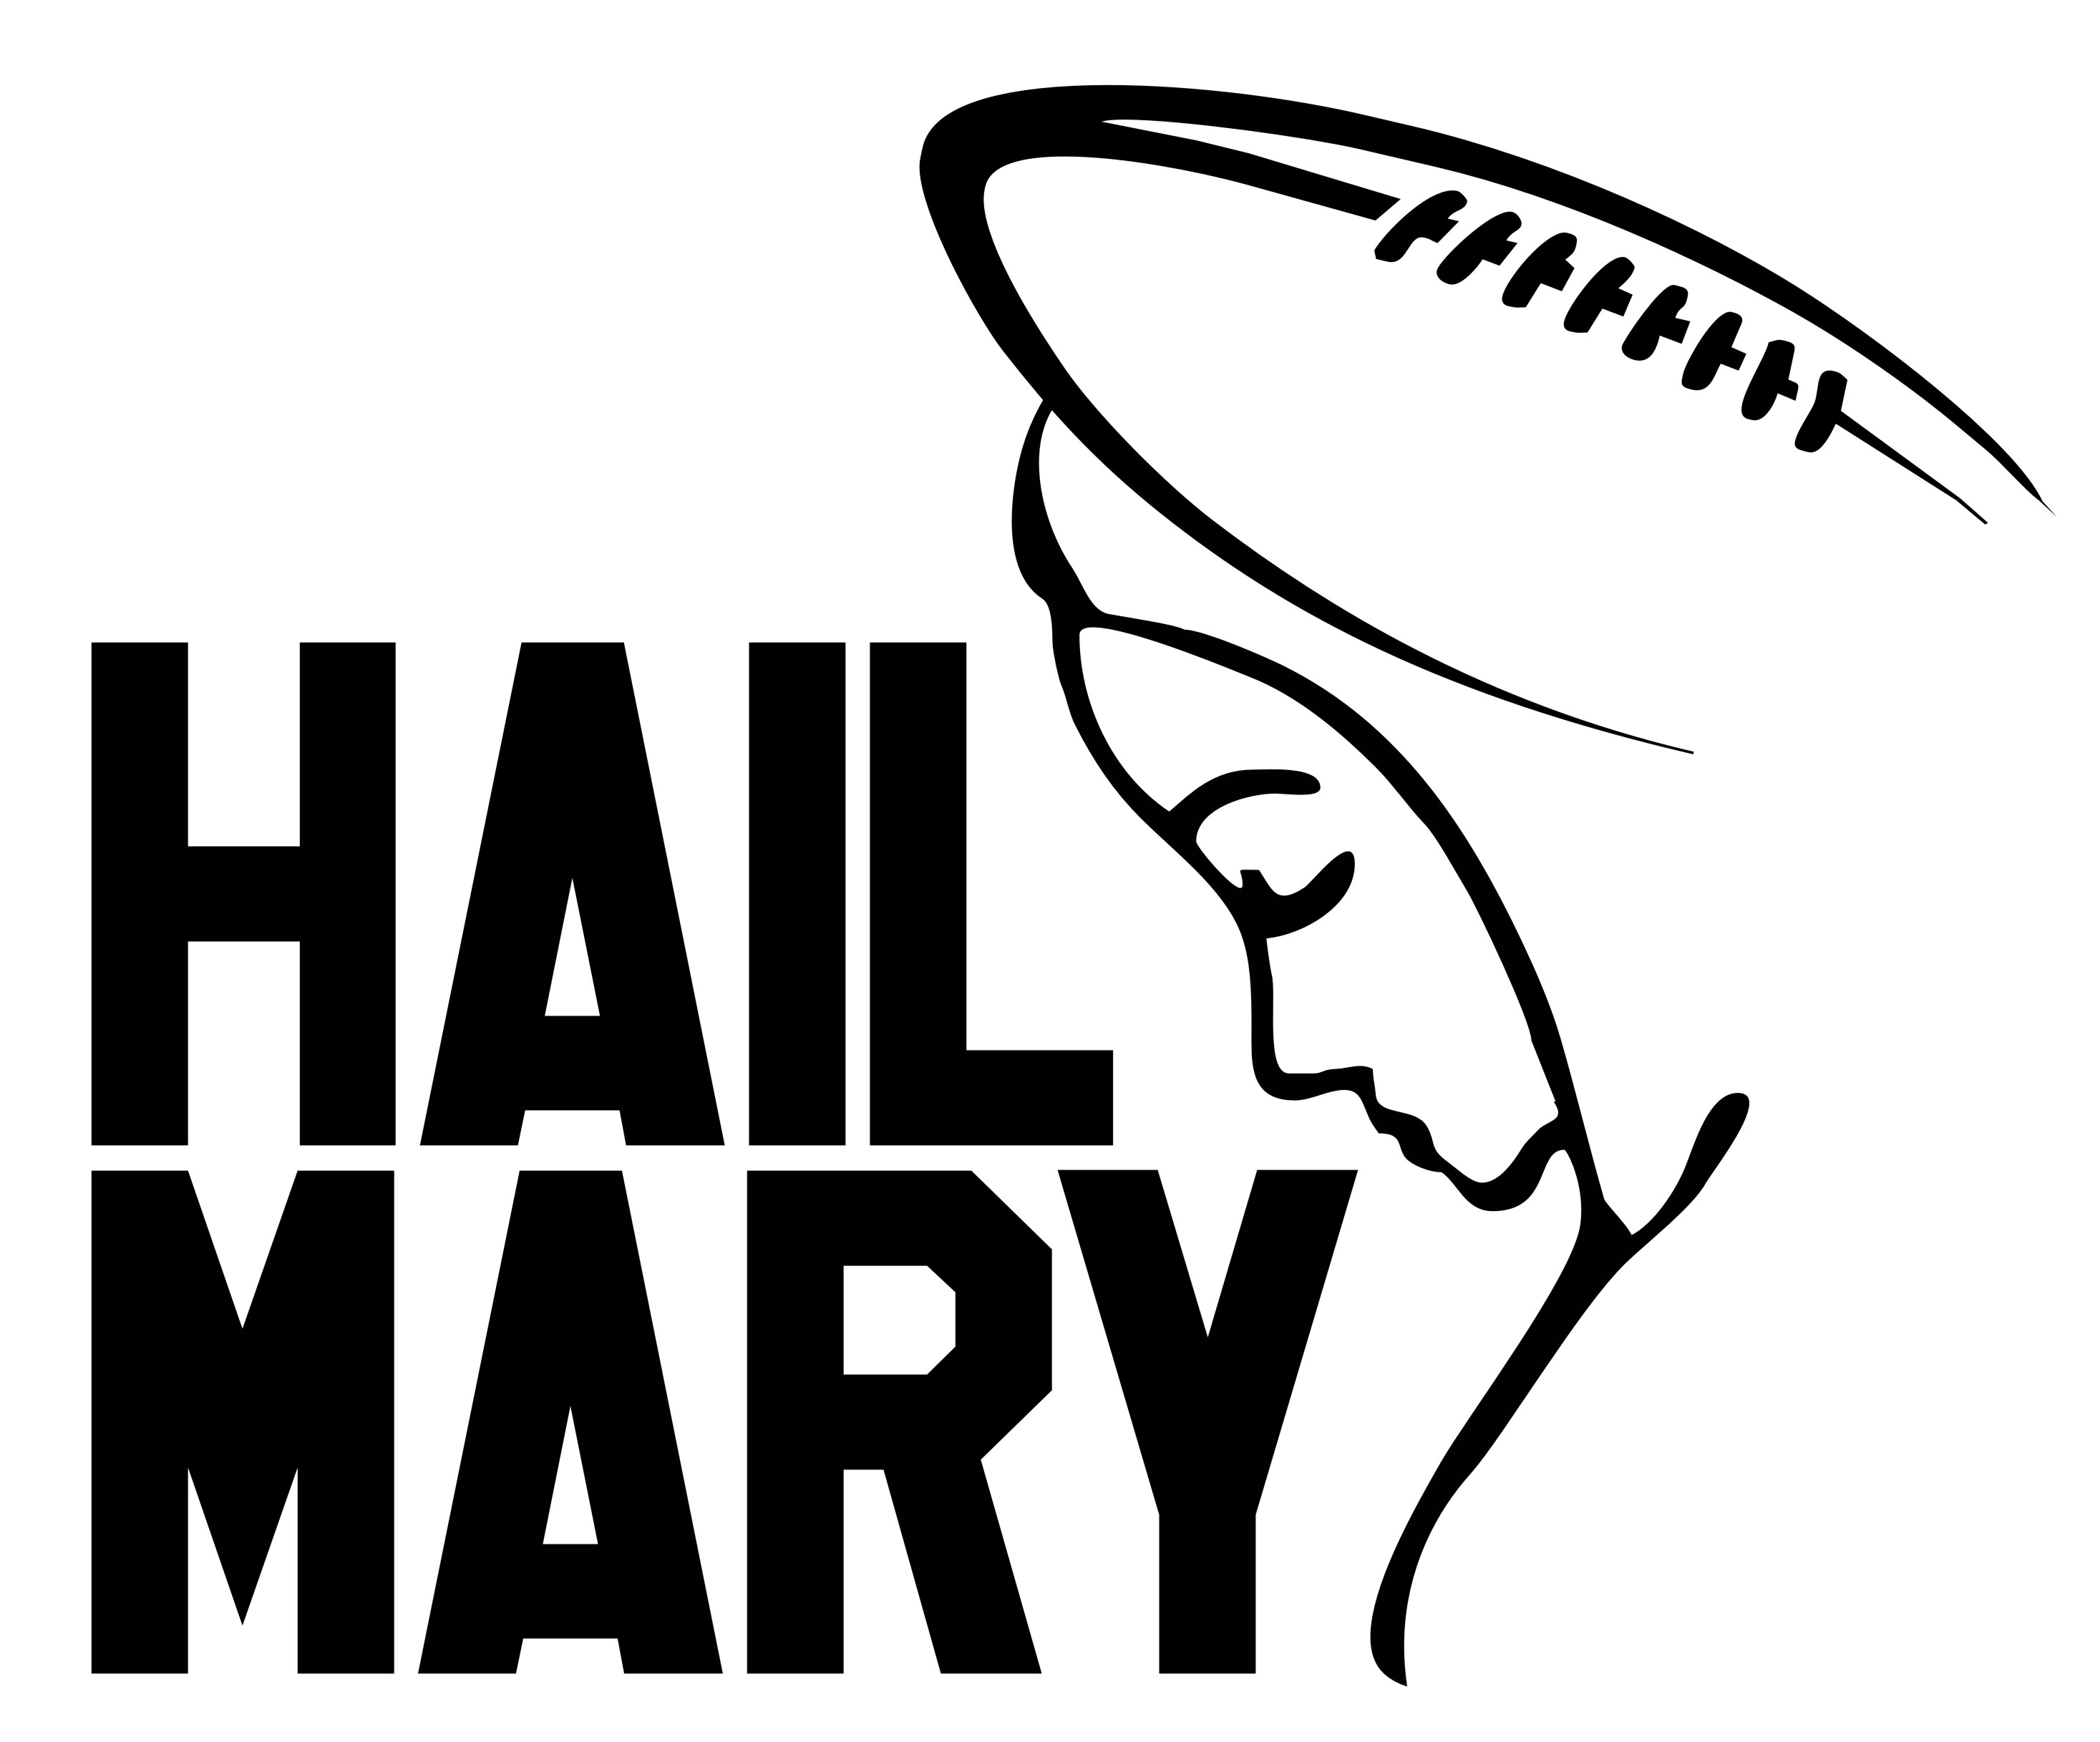 Hail Mary Show 2 -  A draftról még utoljára nyertesekvesztesek Tannehill megmondja a tutit